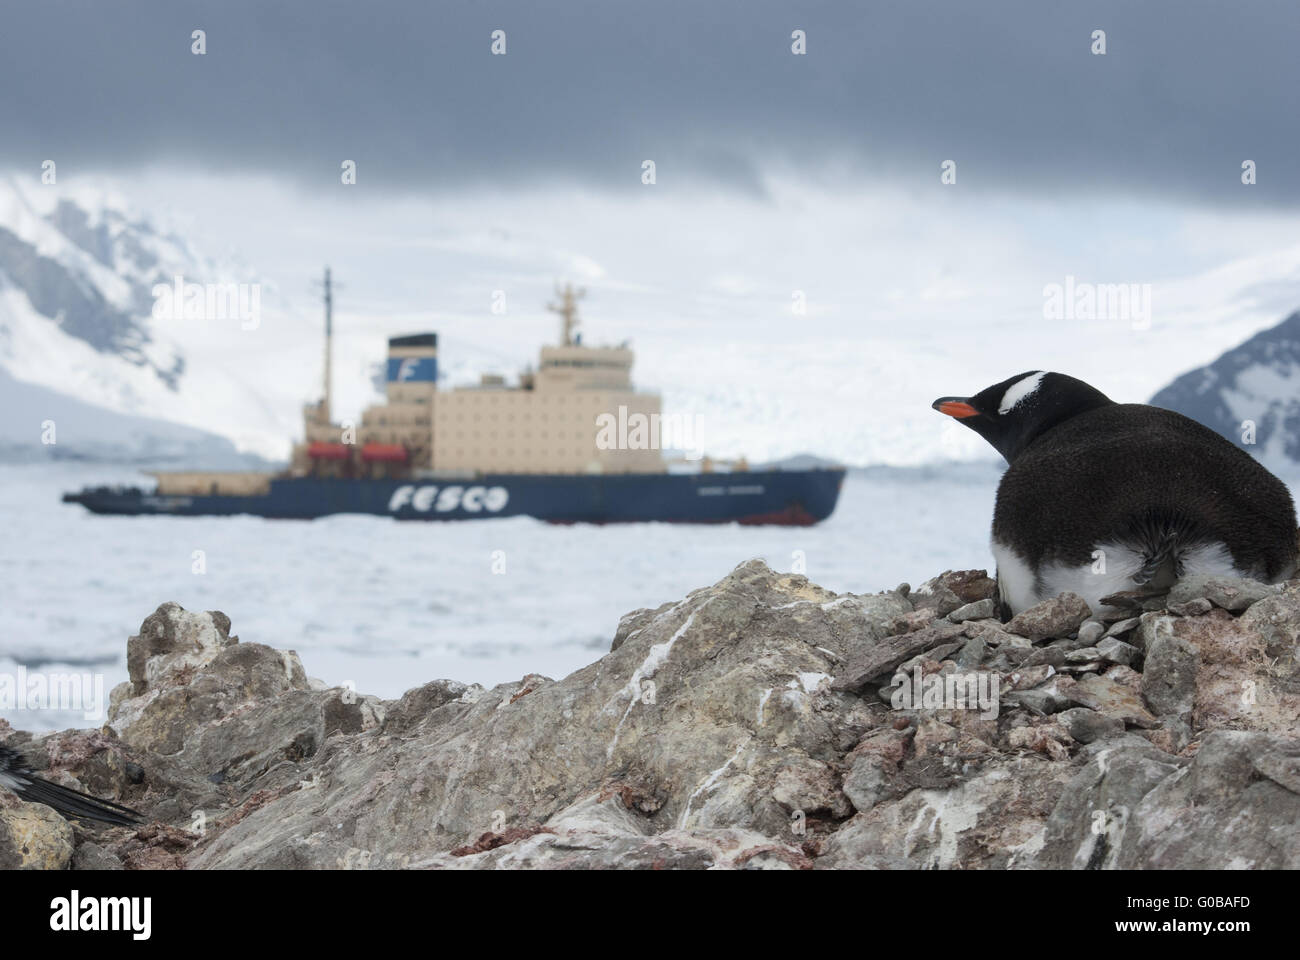 Guest in Antarctica, Gentoo penguin looking at ice-breaker. Stock Photo